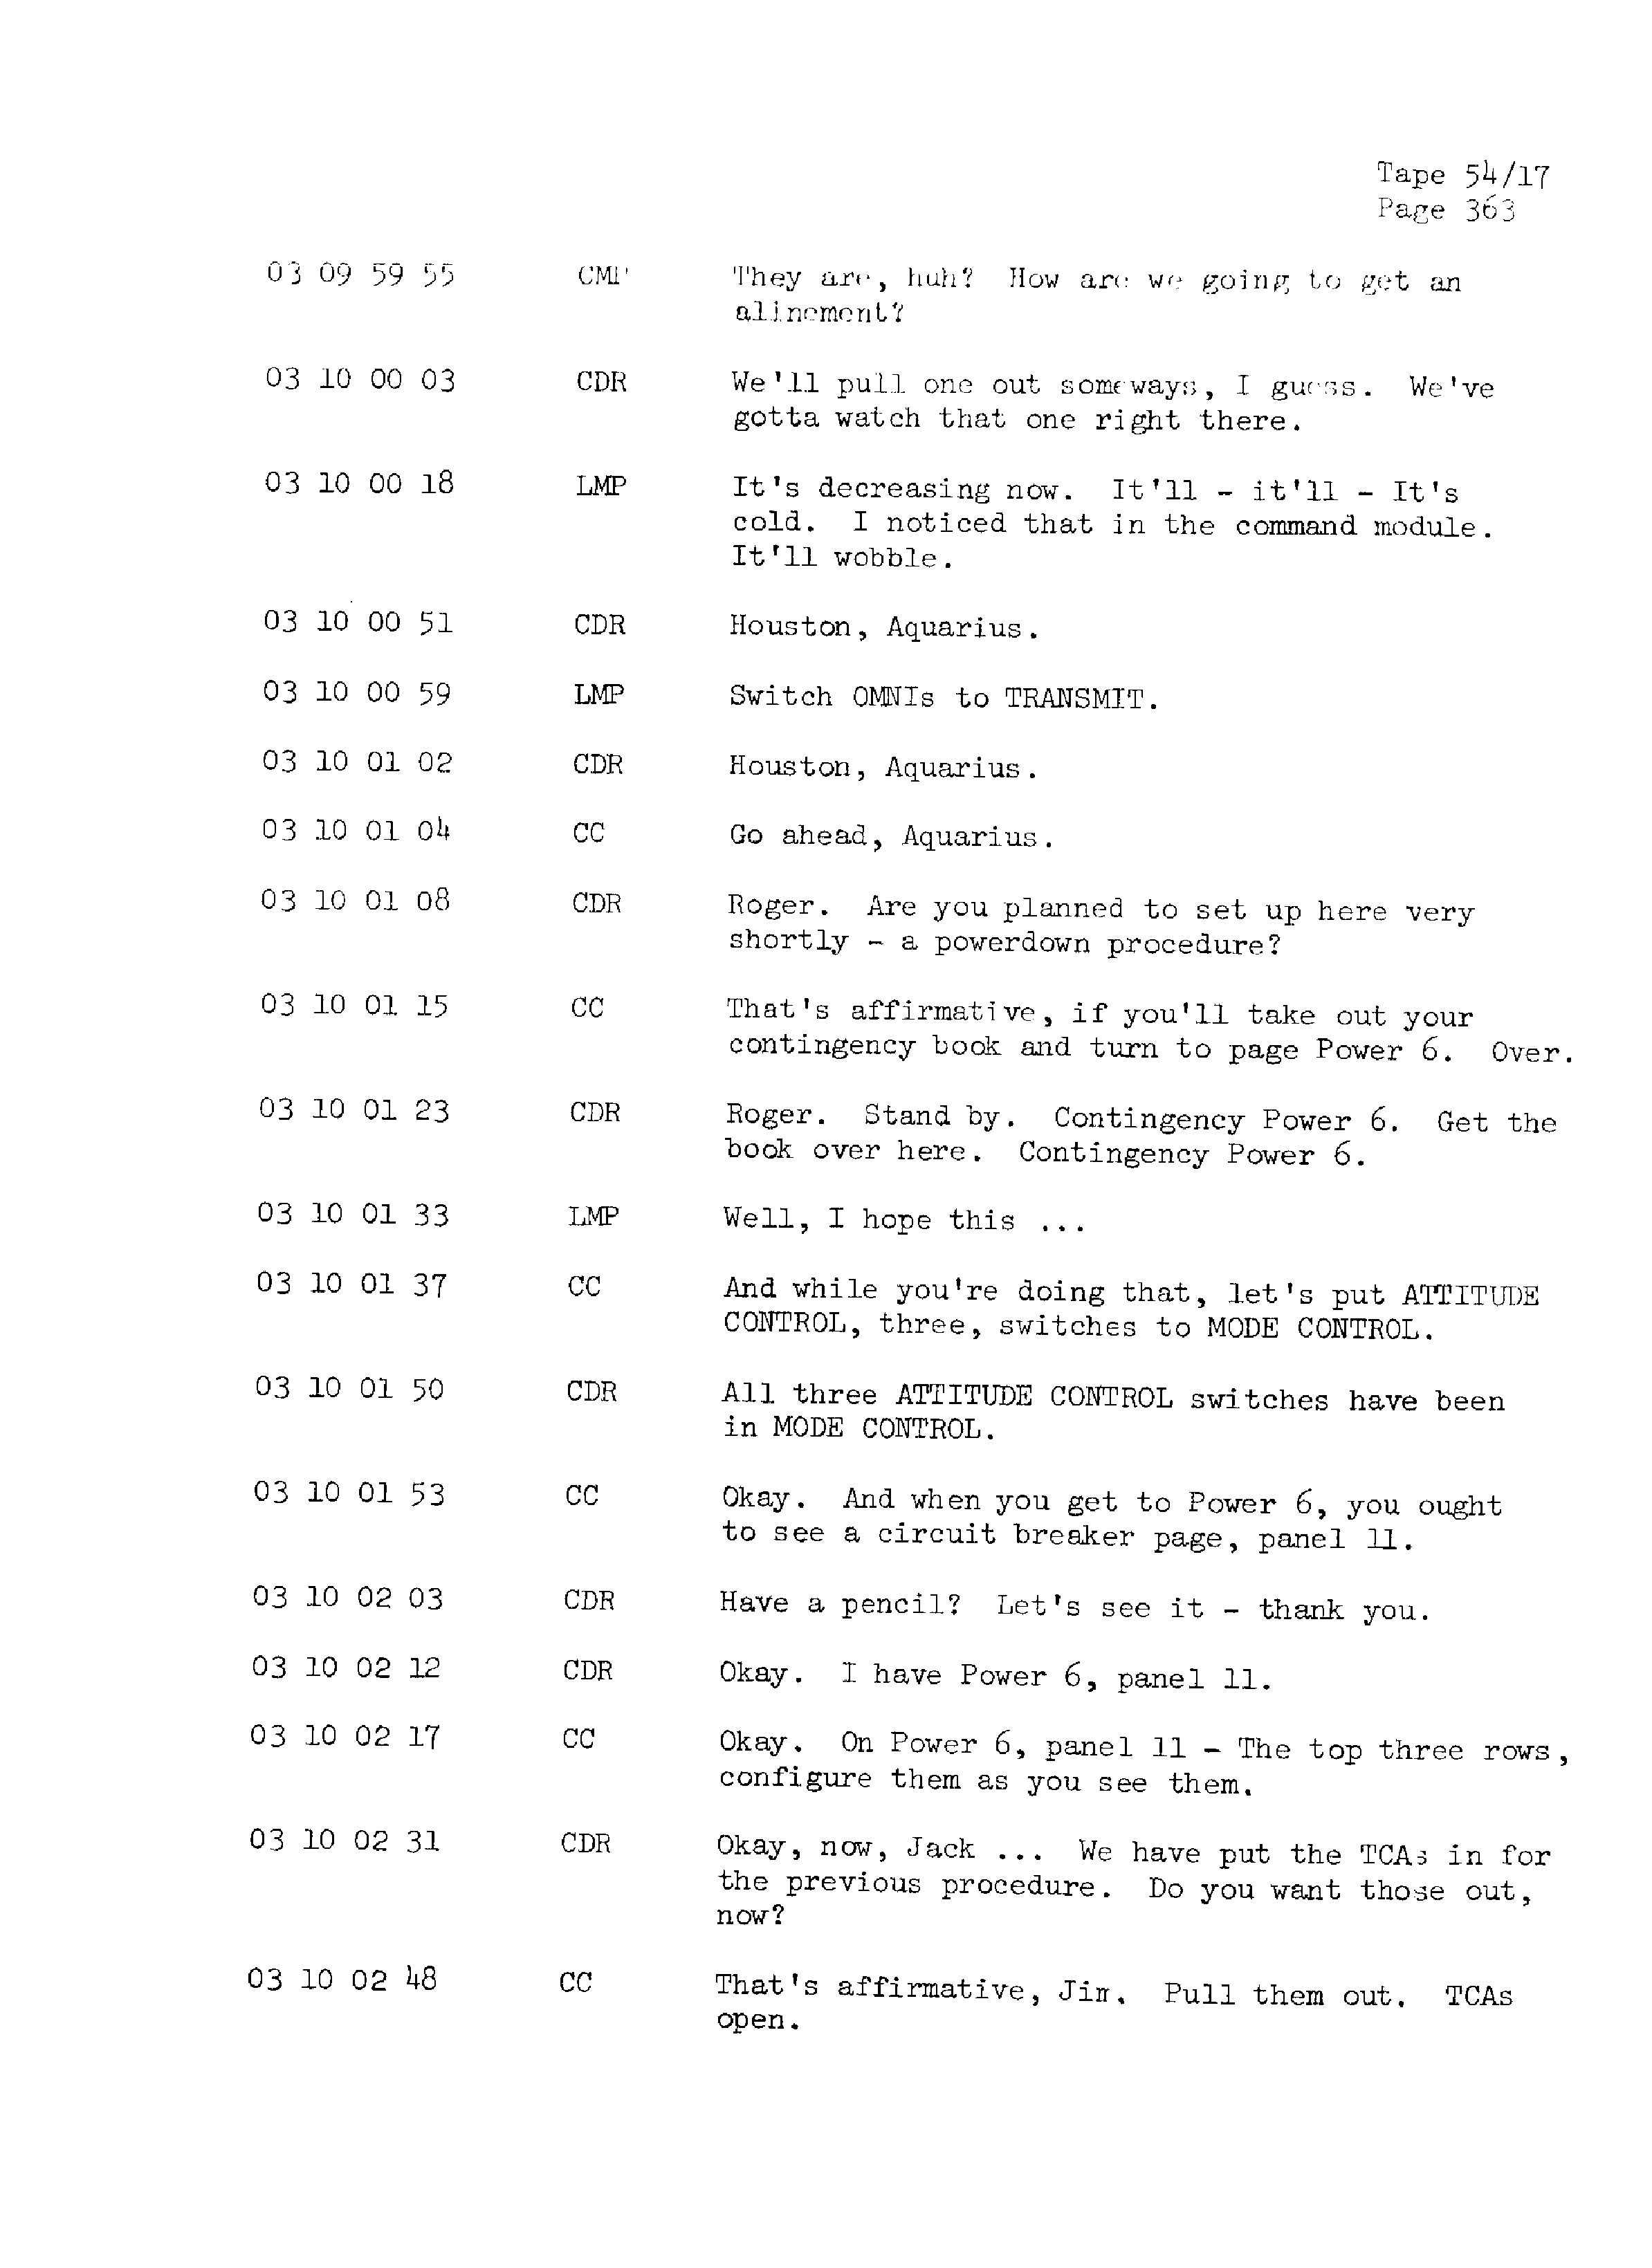 Page 370 of Apollo 13’s original transcript